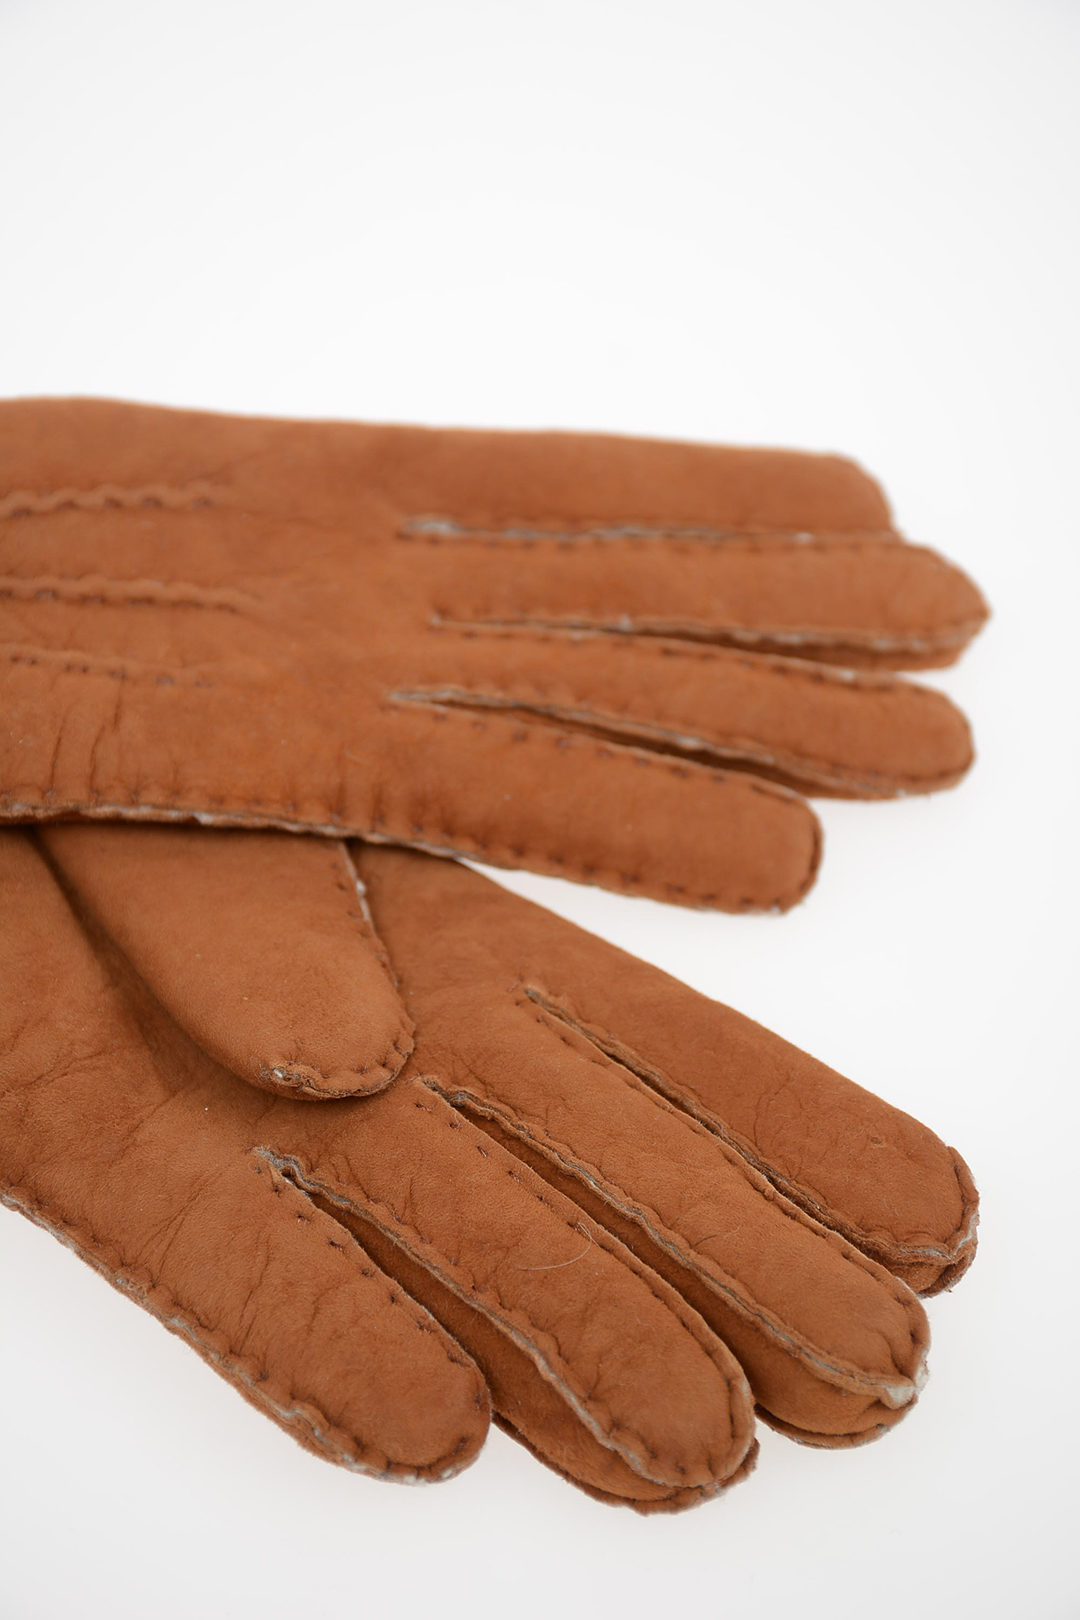 Guanti donna di pelle nera intrecciata con pelliccia naturale – Gala Gloves